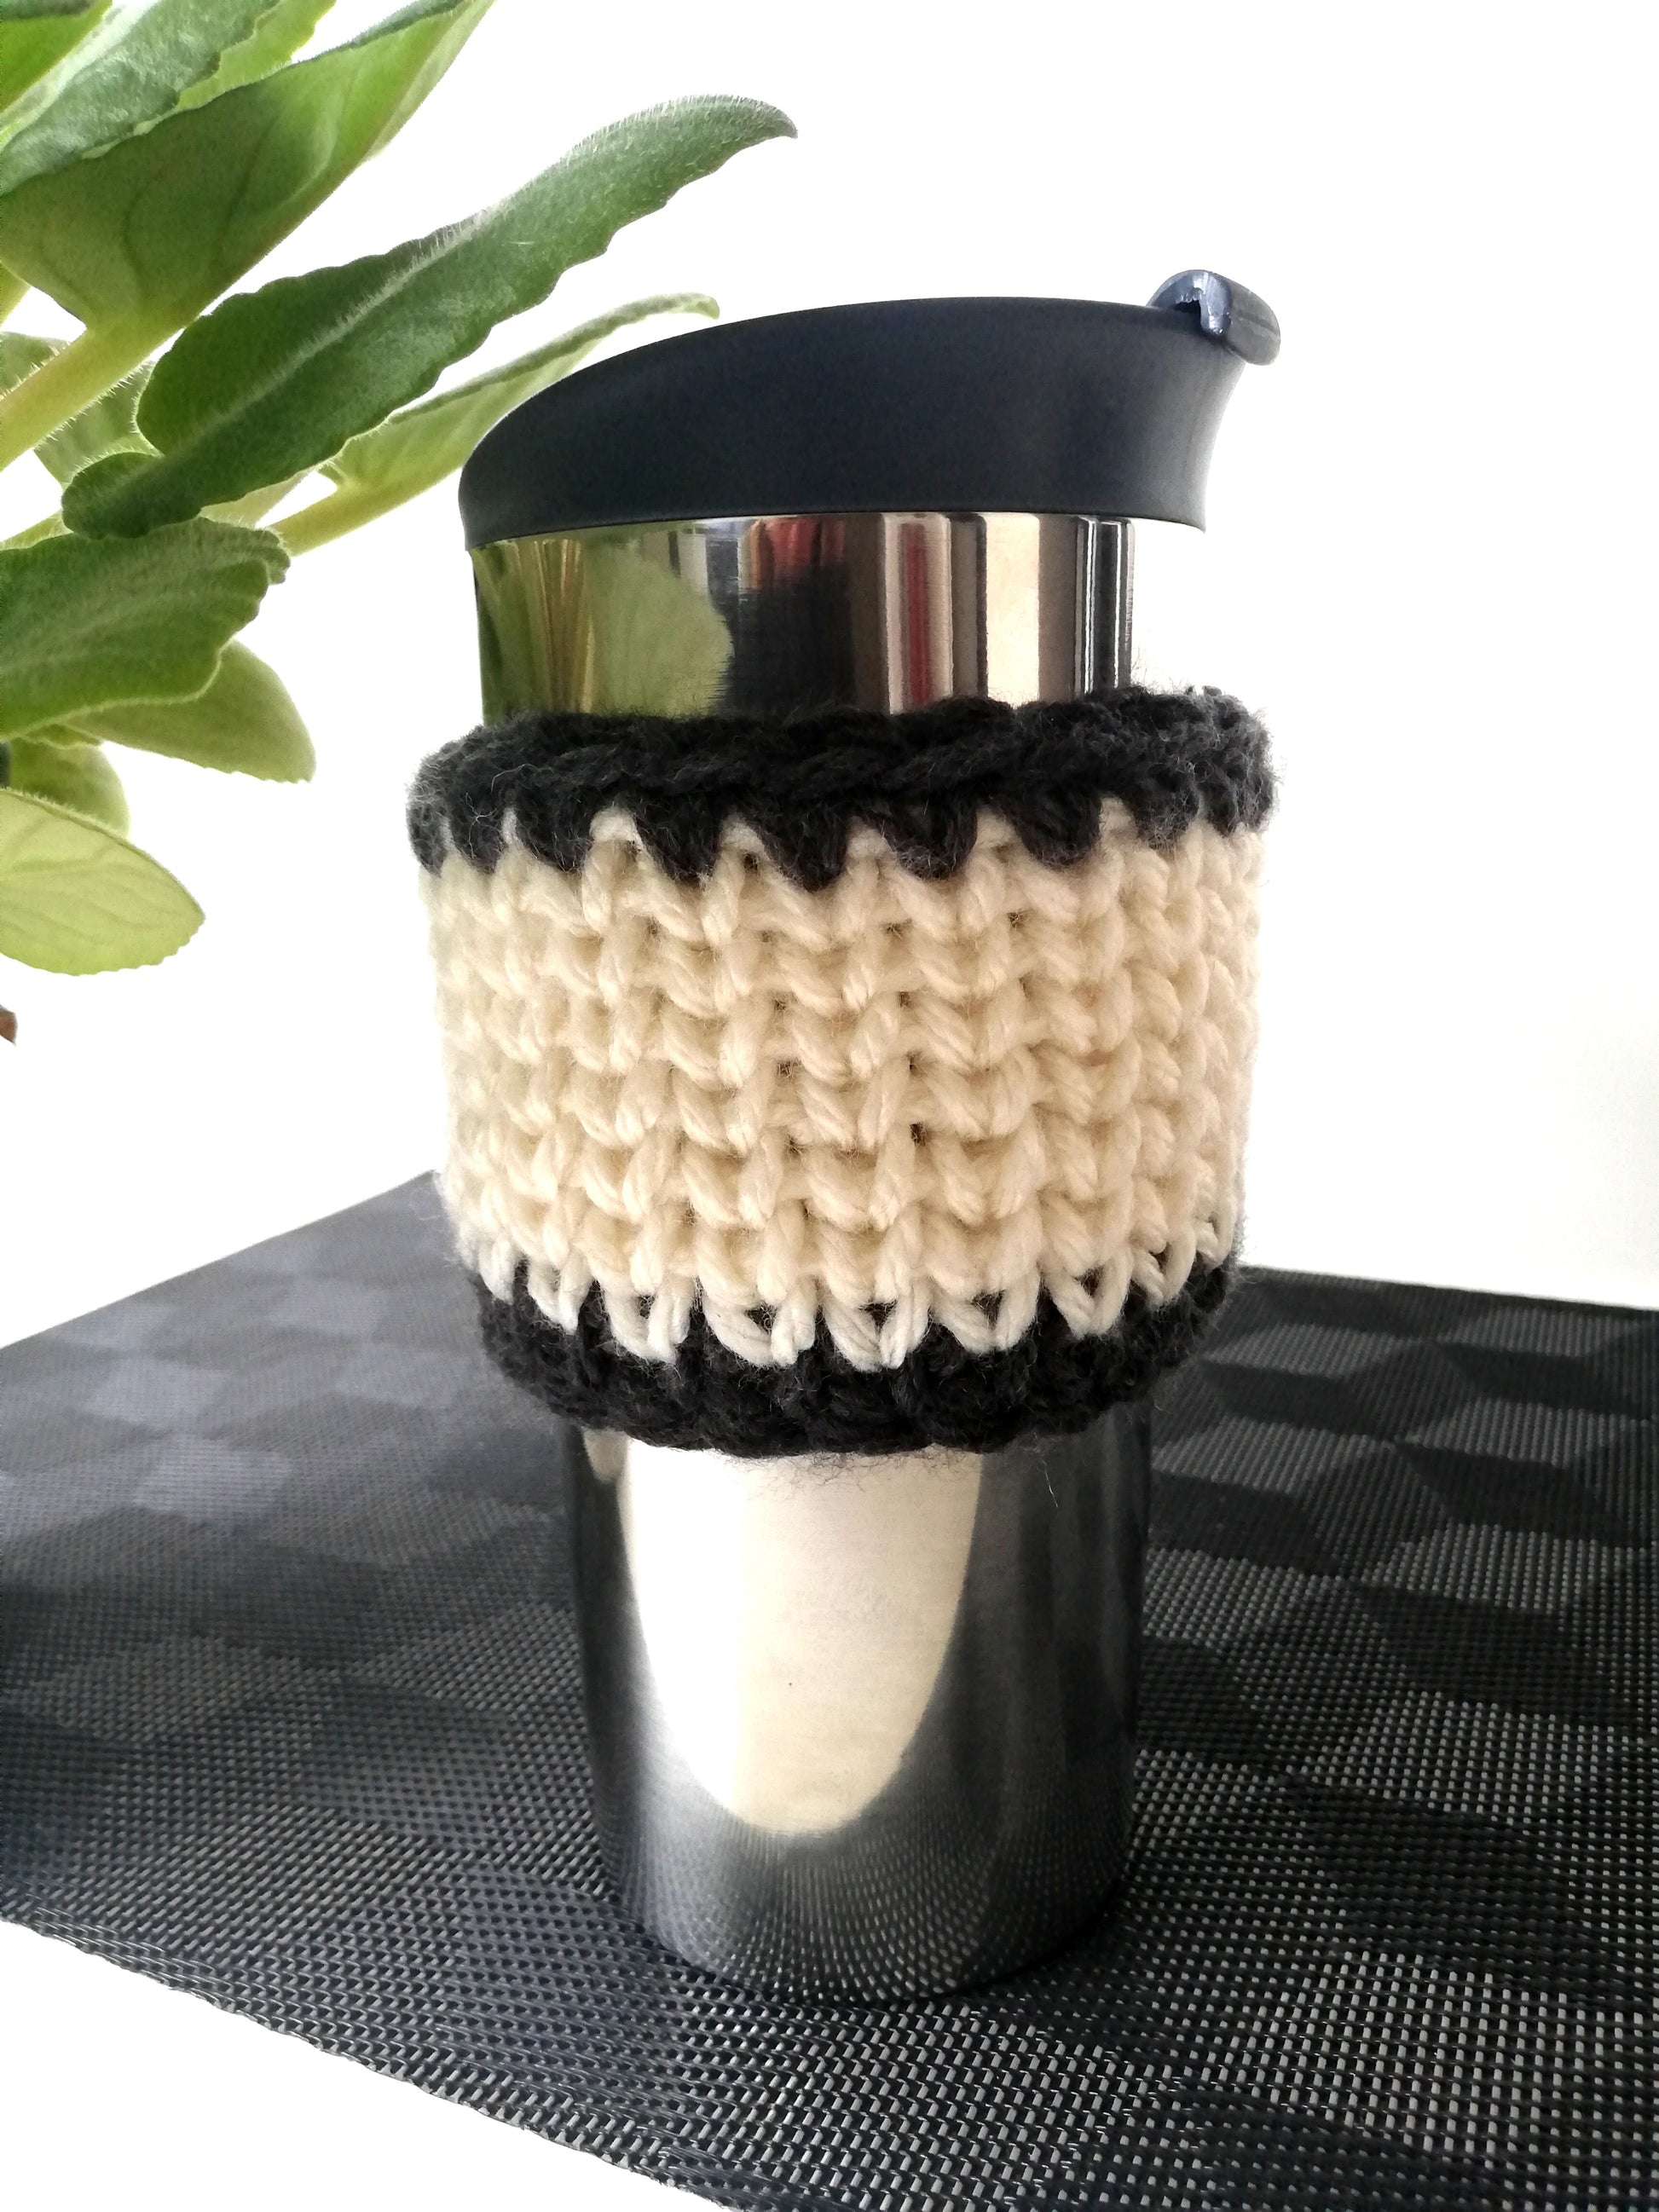 Crochet pattern: easy cup cozy